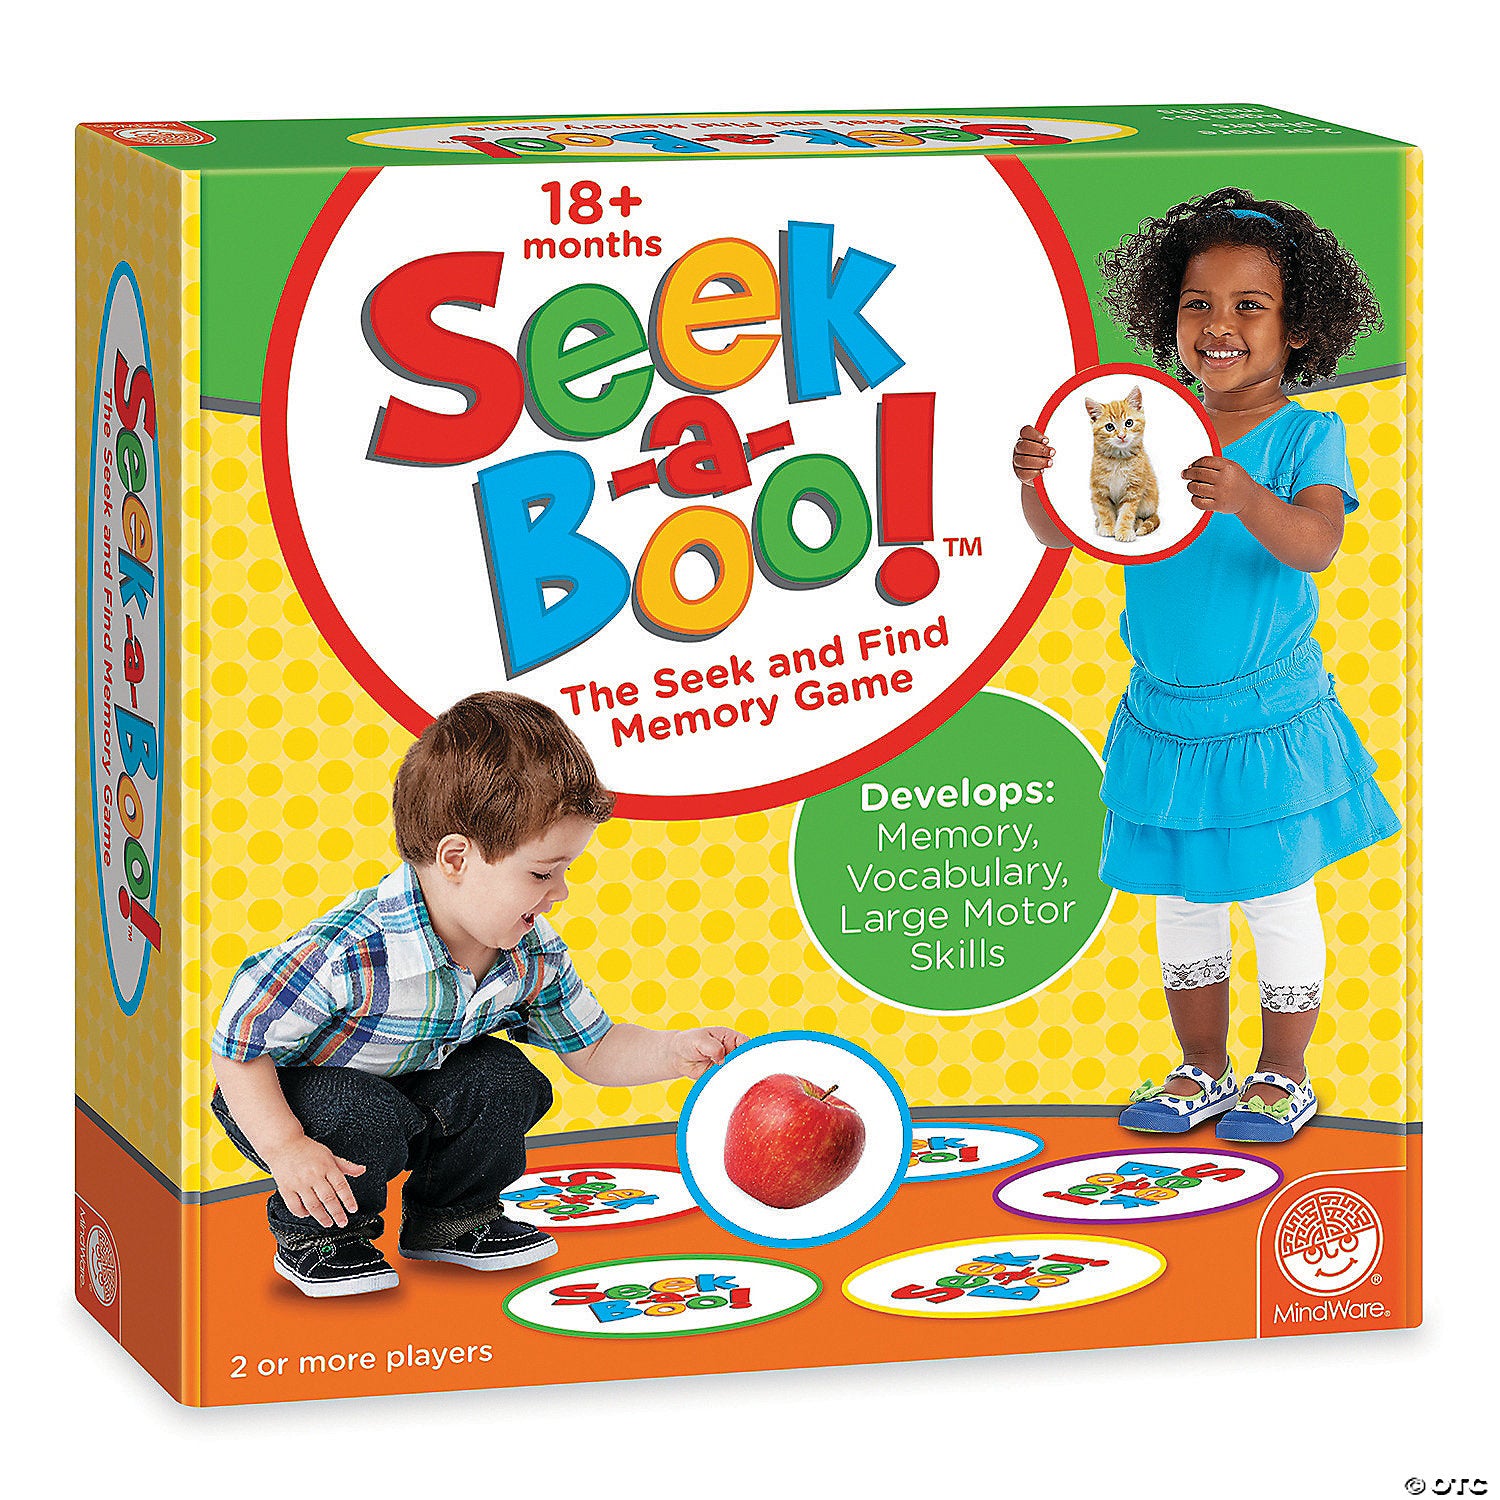 Seek-a-Boo! Seek and Find Memory Game